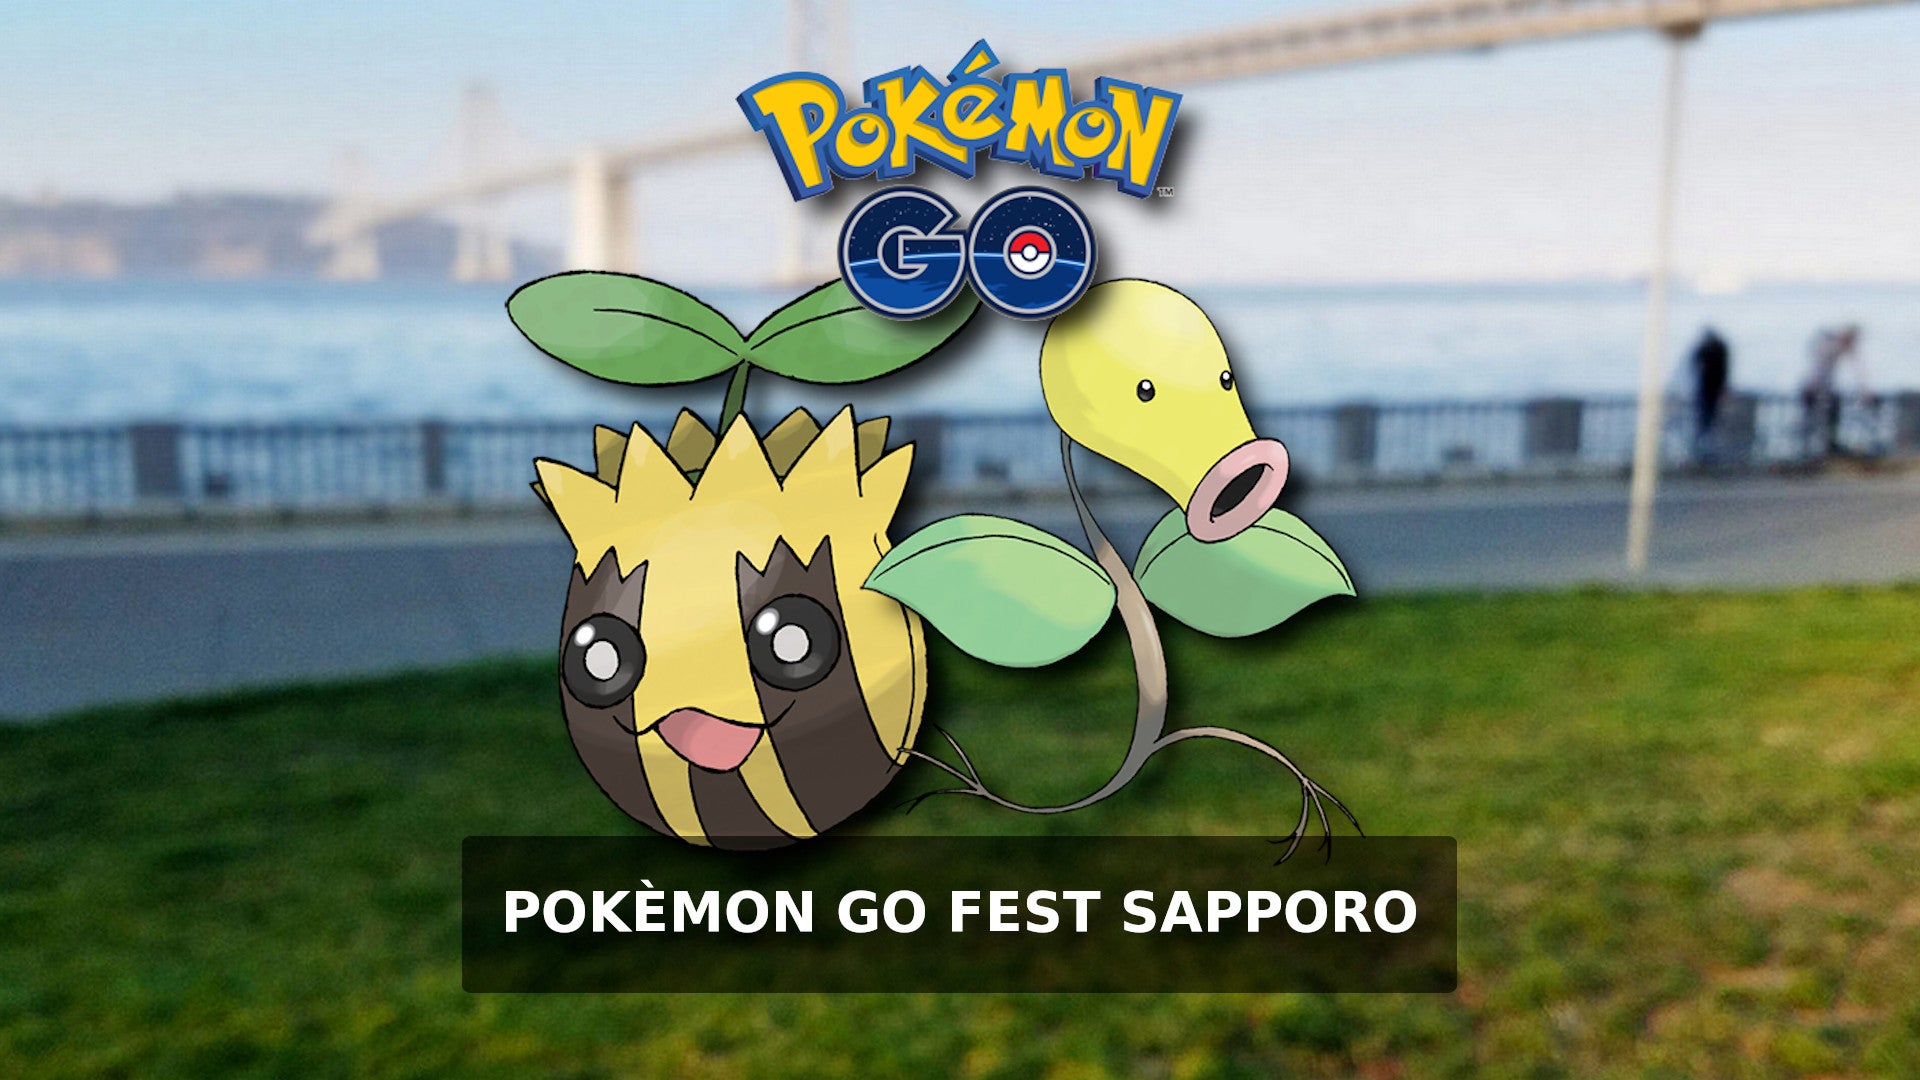 Bilder zu Pokémon Go Fest Sapporo - Sammler-Herausforderung und globale Herausforderung